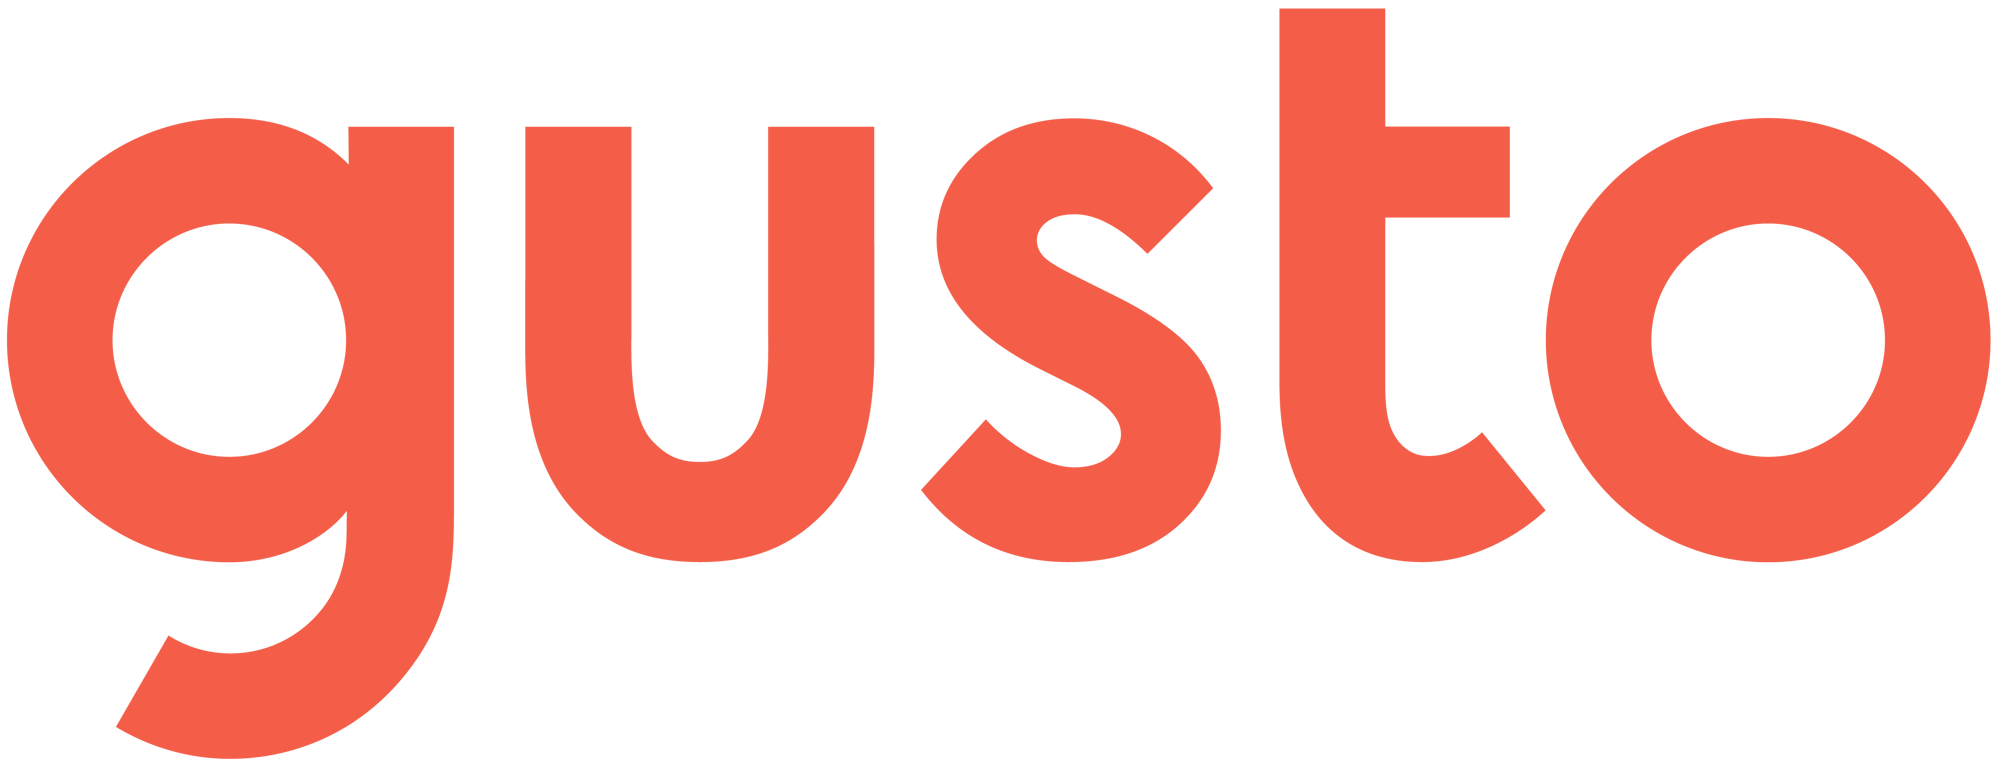 Gusto-Logo-png